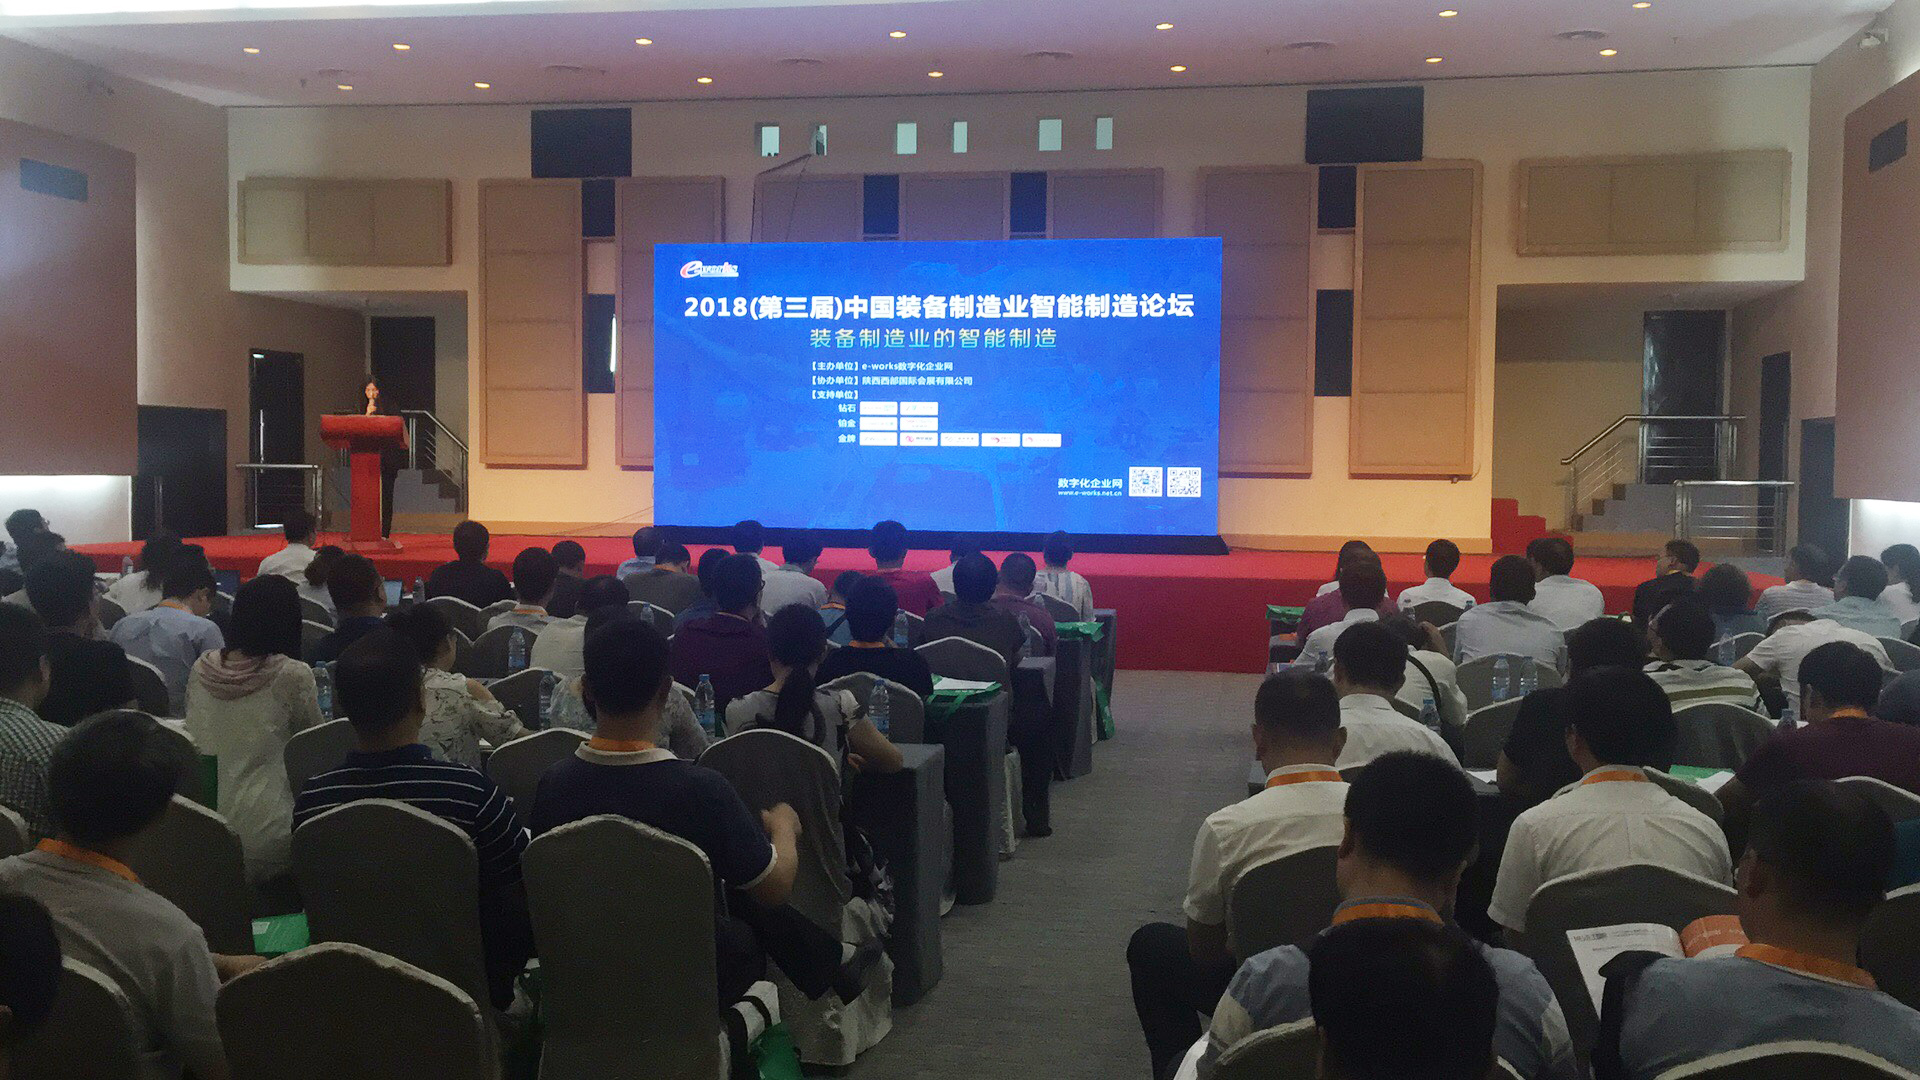 2018(第三届)中国装备制造业智能制造论坛|美林数据助力装备制造业转型升级